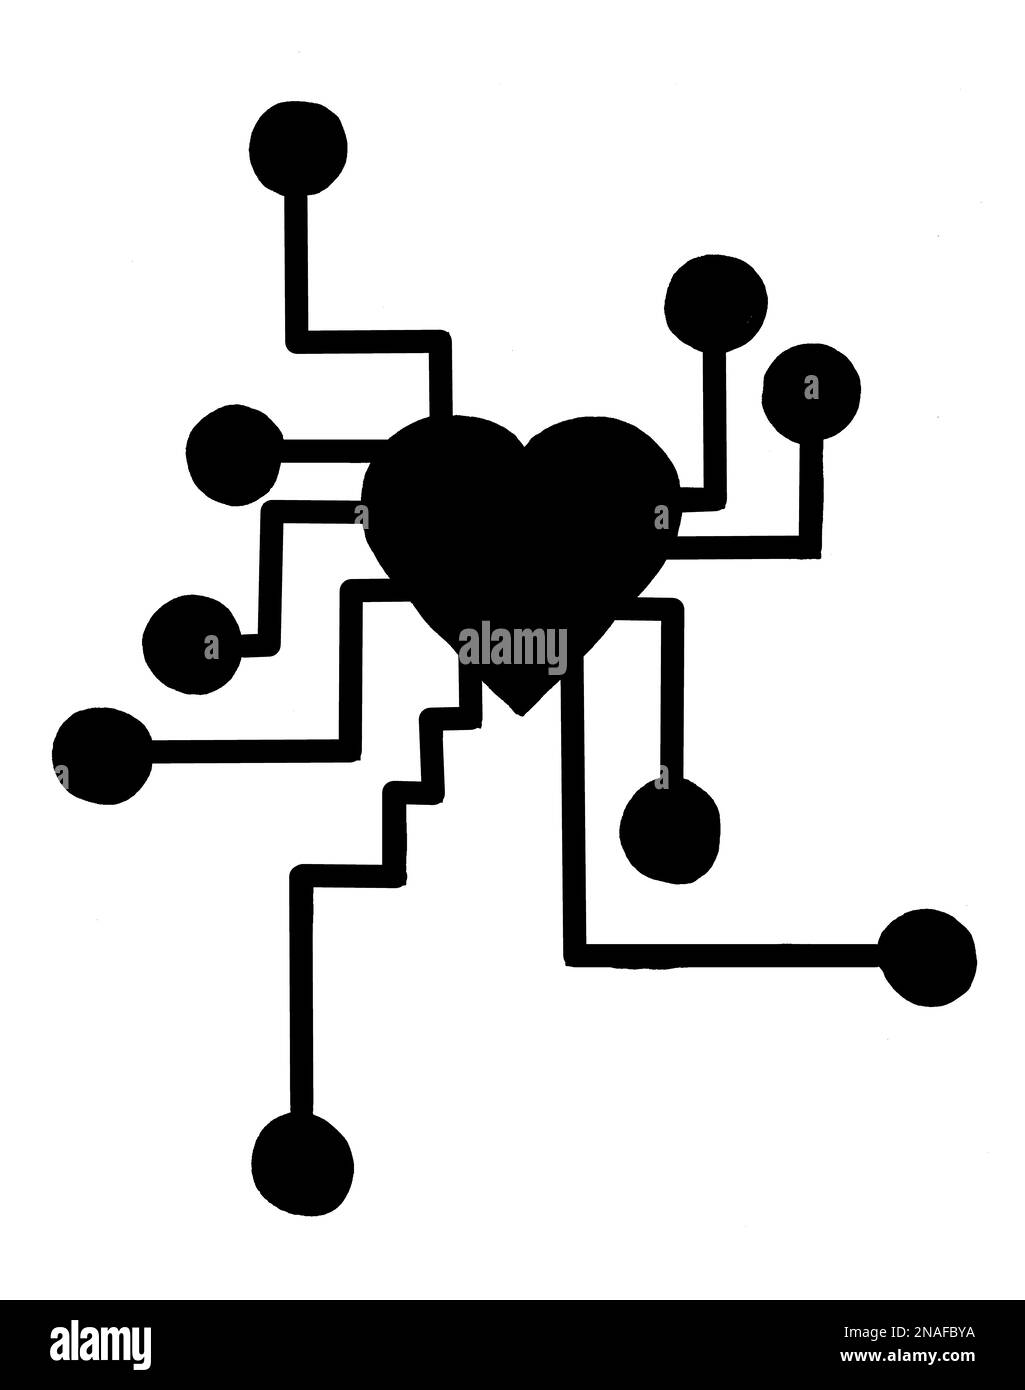 Immagine in bianco e nero di un cuore con collegamenti elettronici che lo staccano Foto Stock